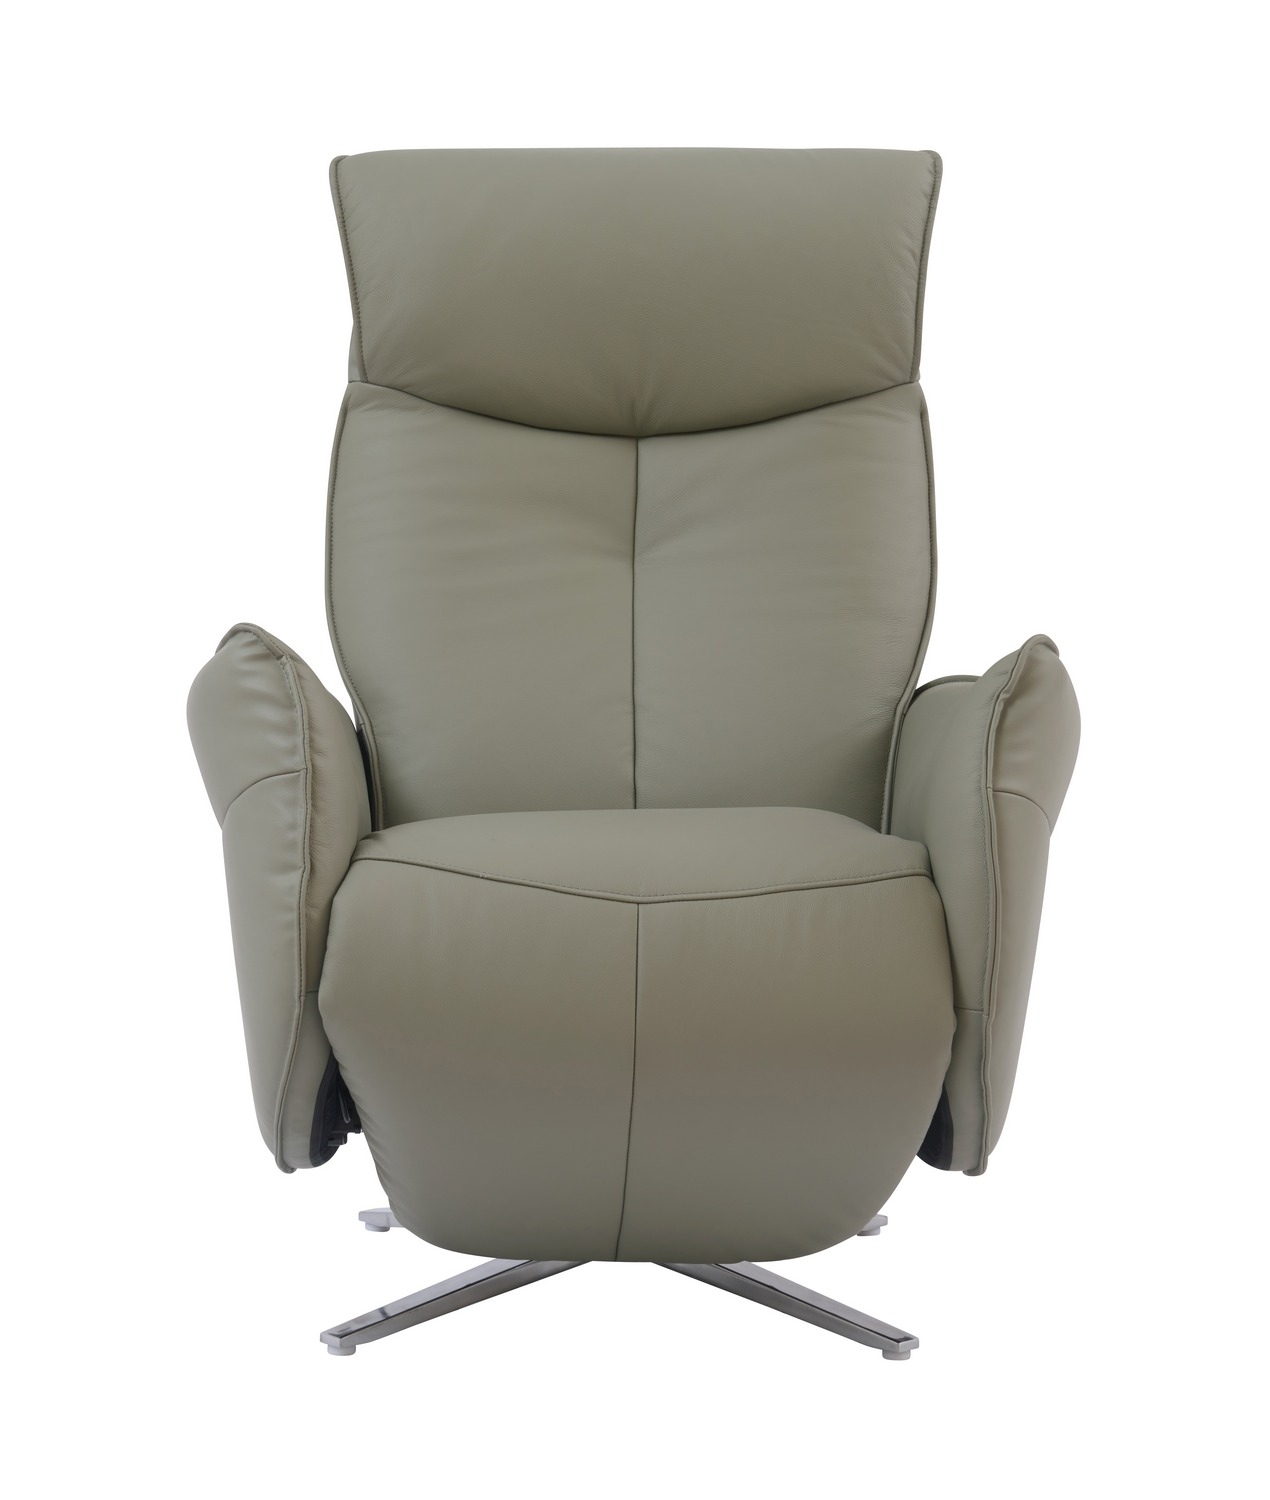 Barcalounger Ardon Power Pedestal Recliner Chair - Capri Grey/Leather Match